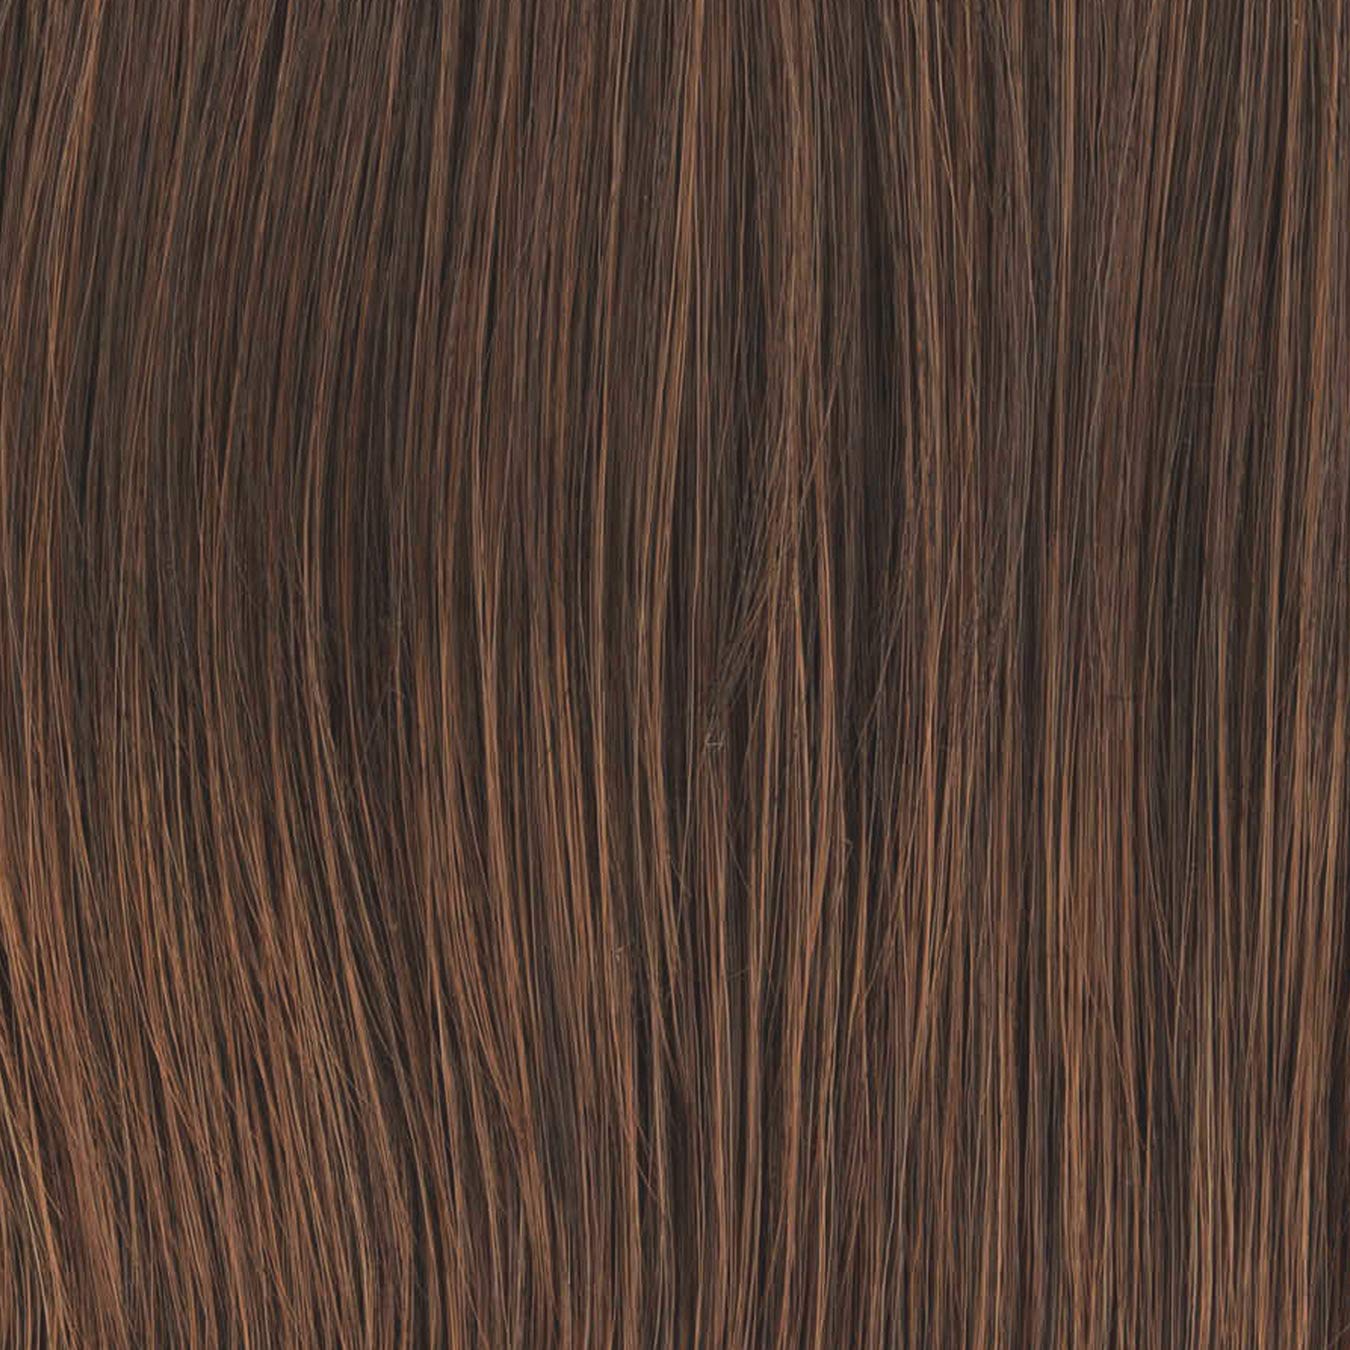 BOOST Wig by Raquel Welch